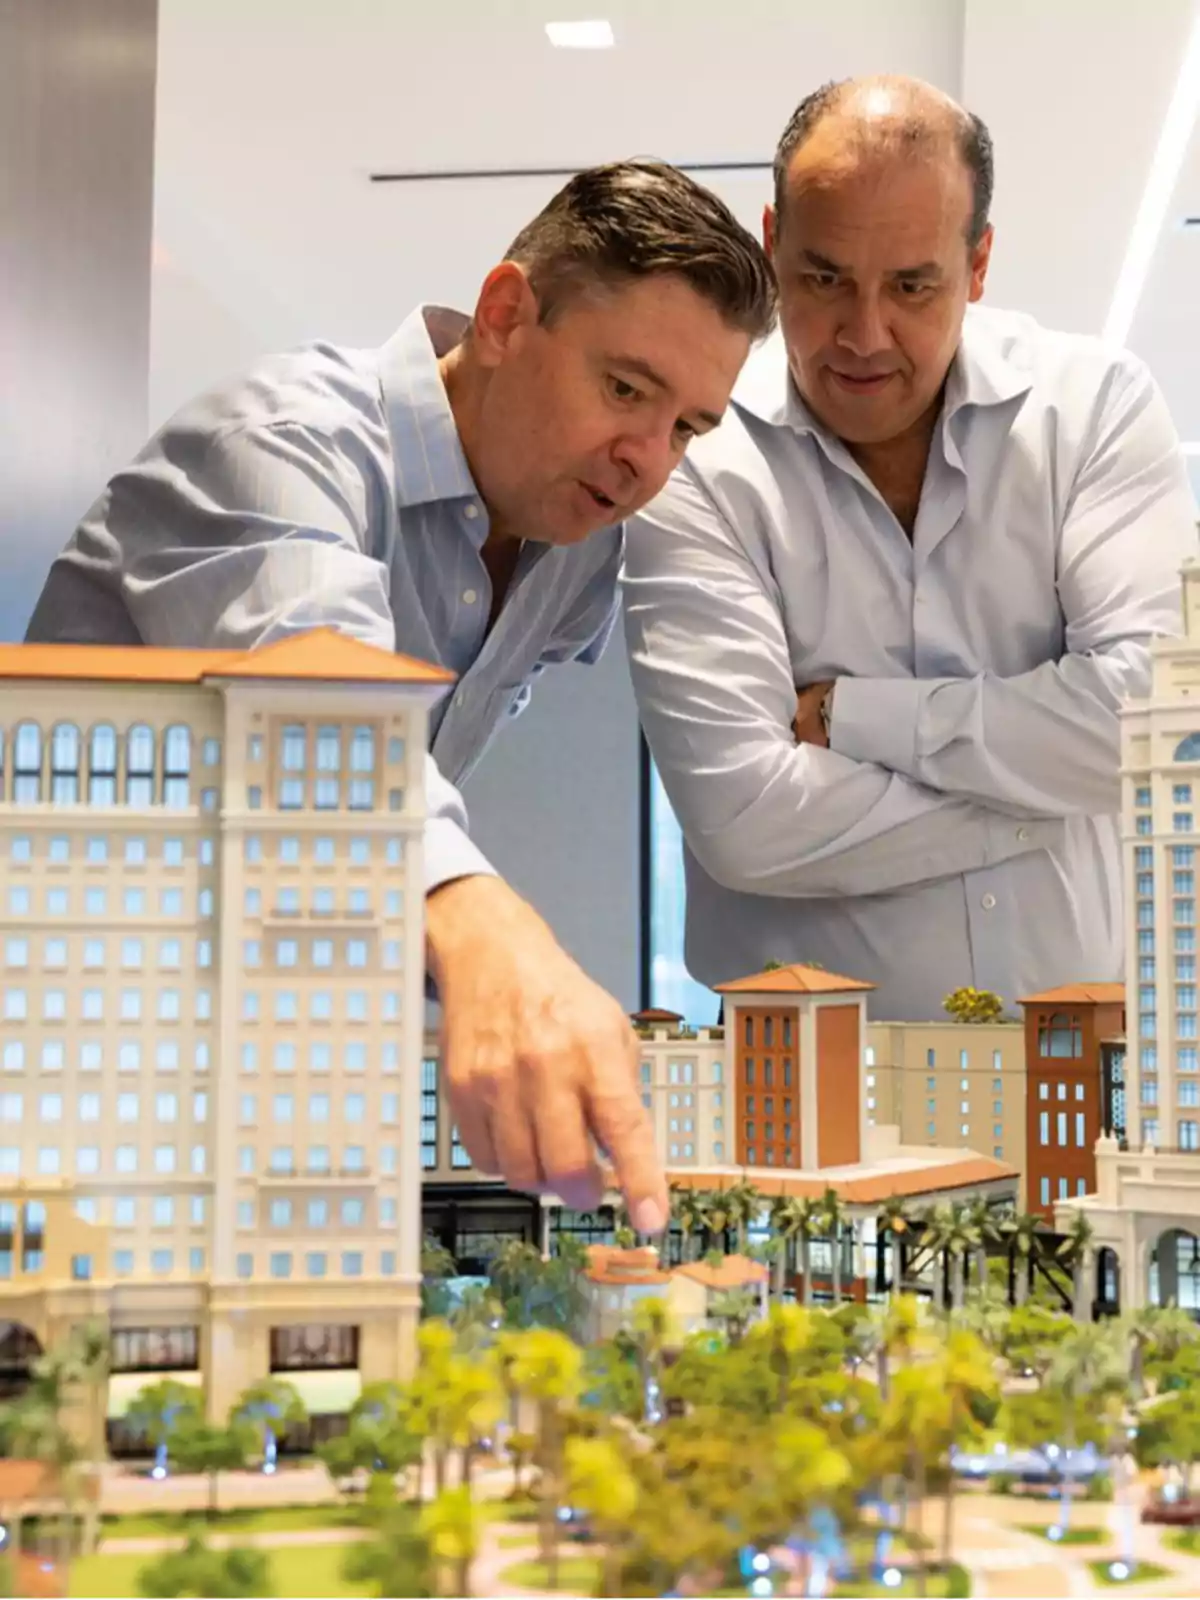 Dos hombres observan y discuten sobre una maqueta arquitectónica detallada de un complejo de edificios.